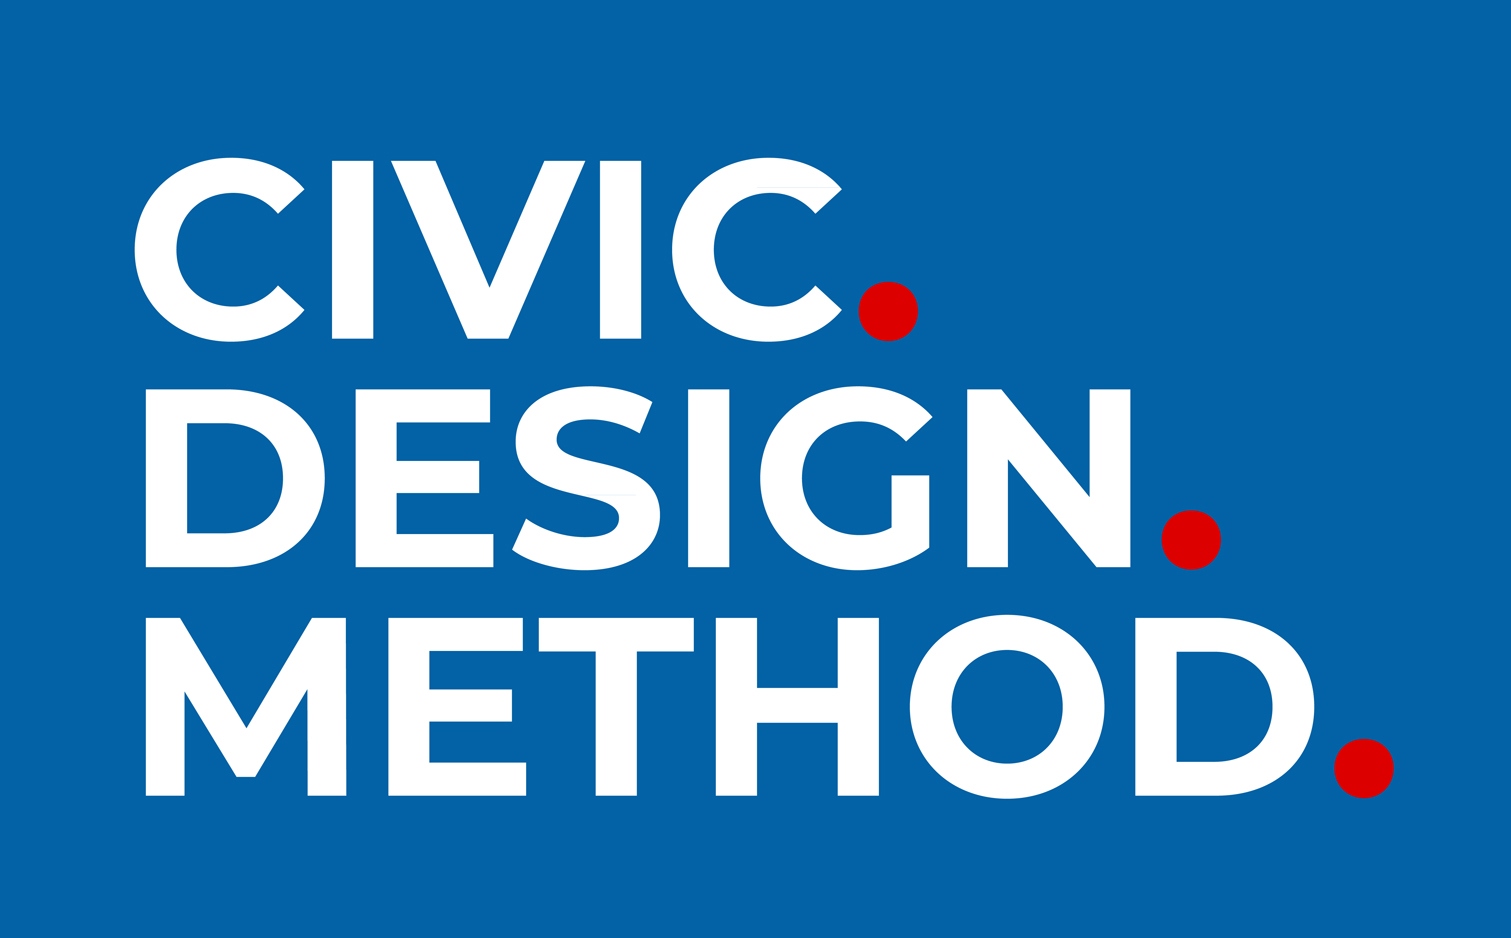 Civic Design Method